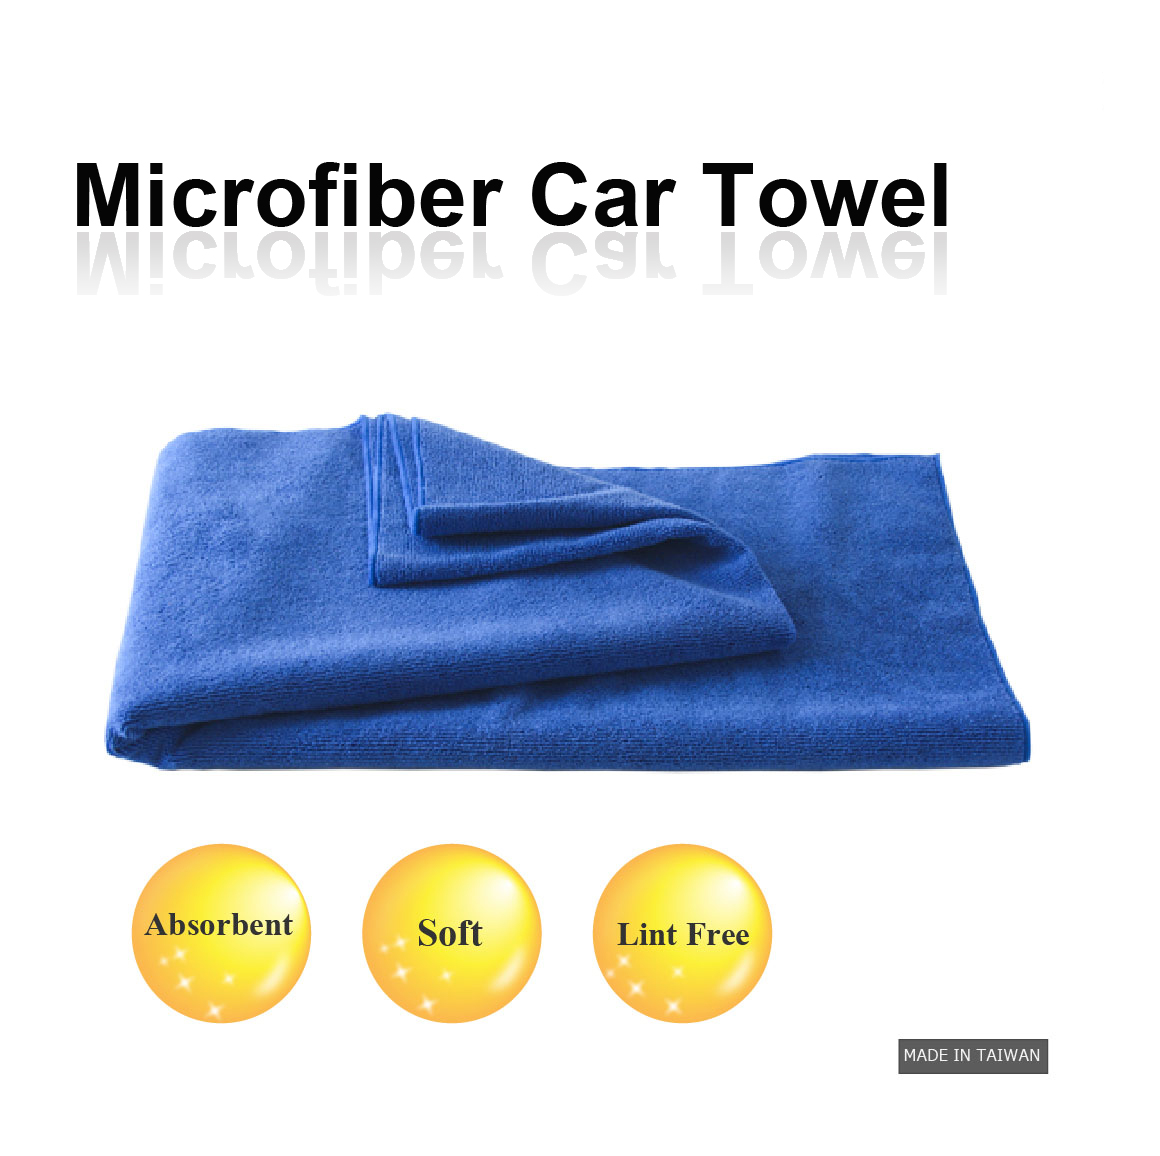 Hi-quality car towel